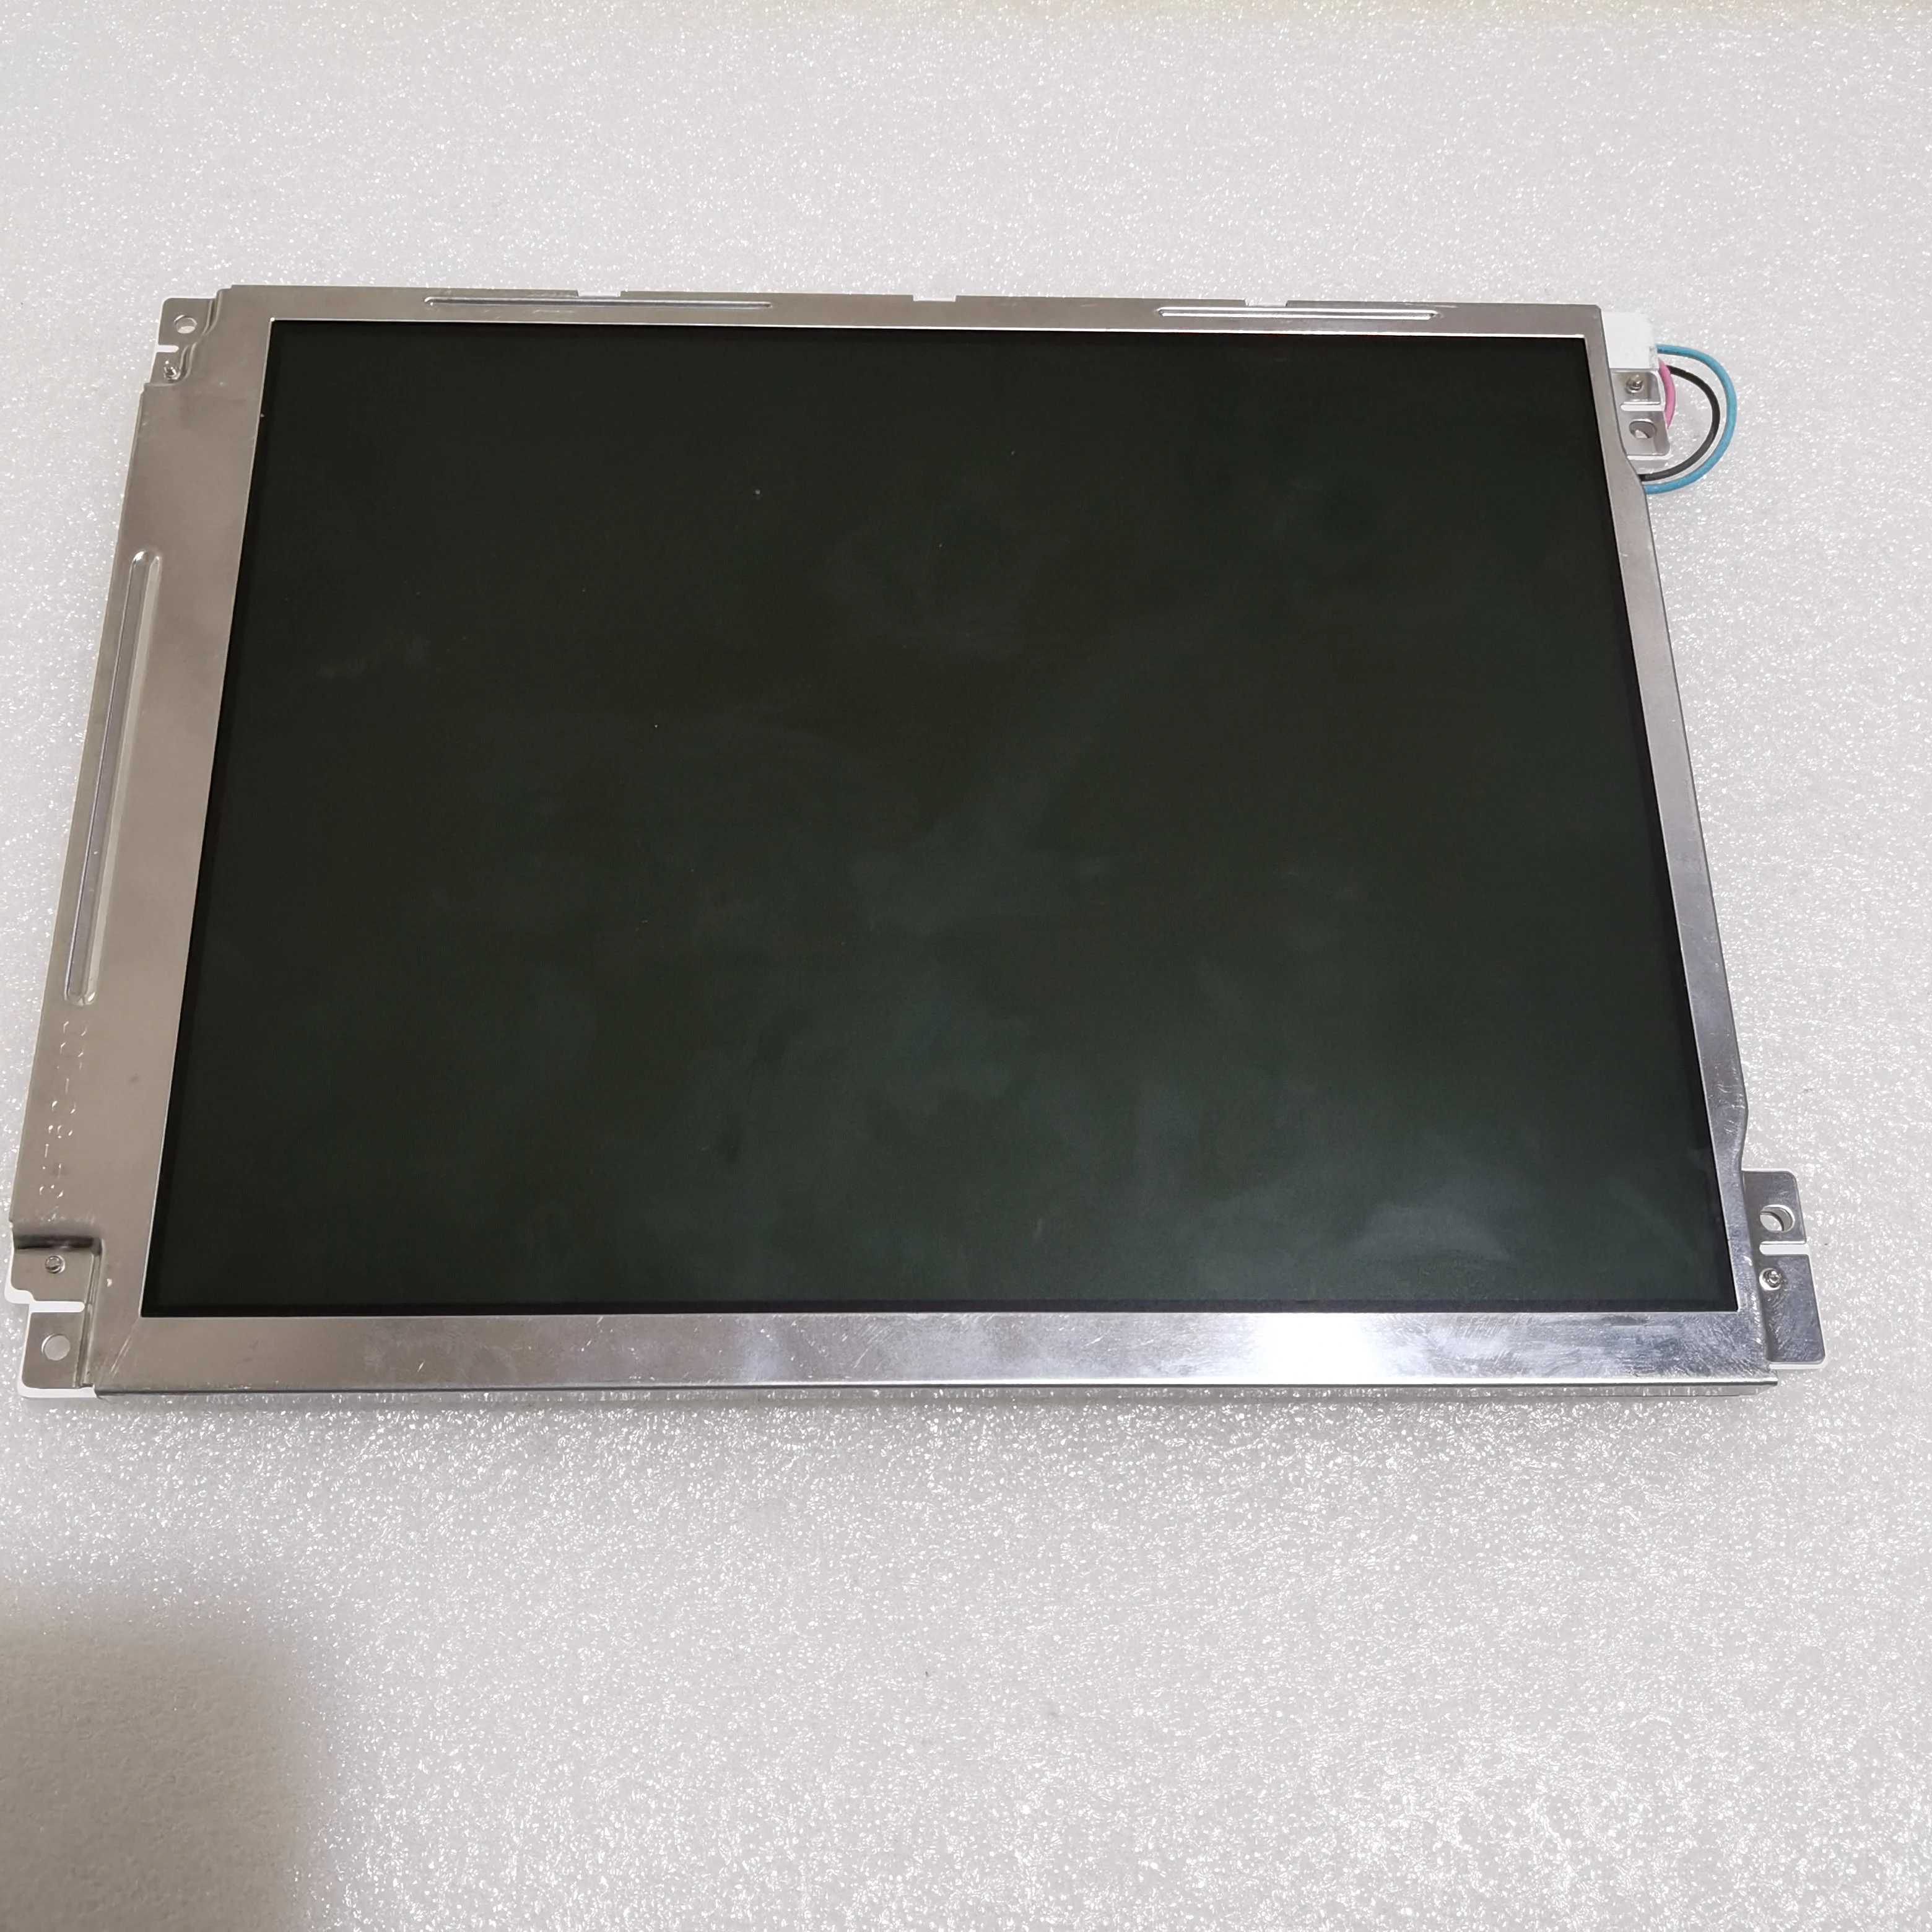 Layar LCD Uji Asli 100% LQ104V1DG61 10.4 Inci